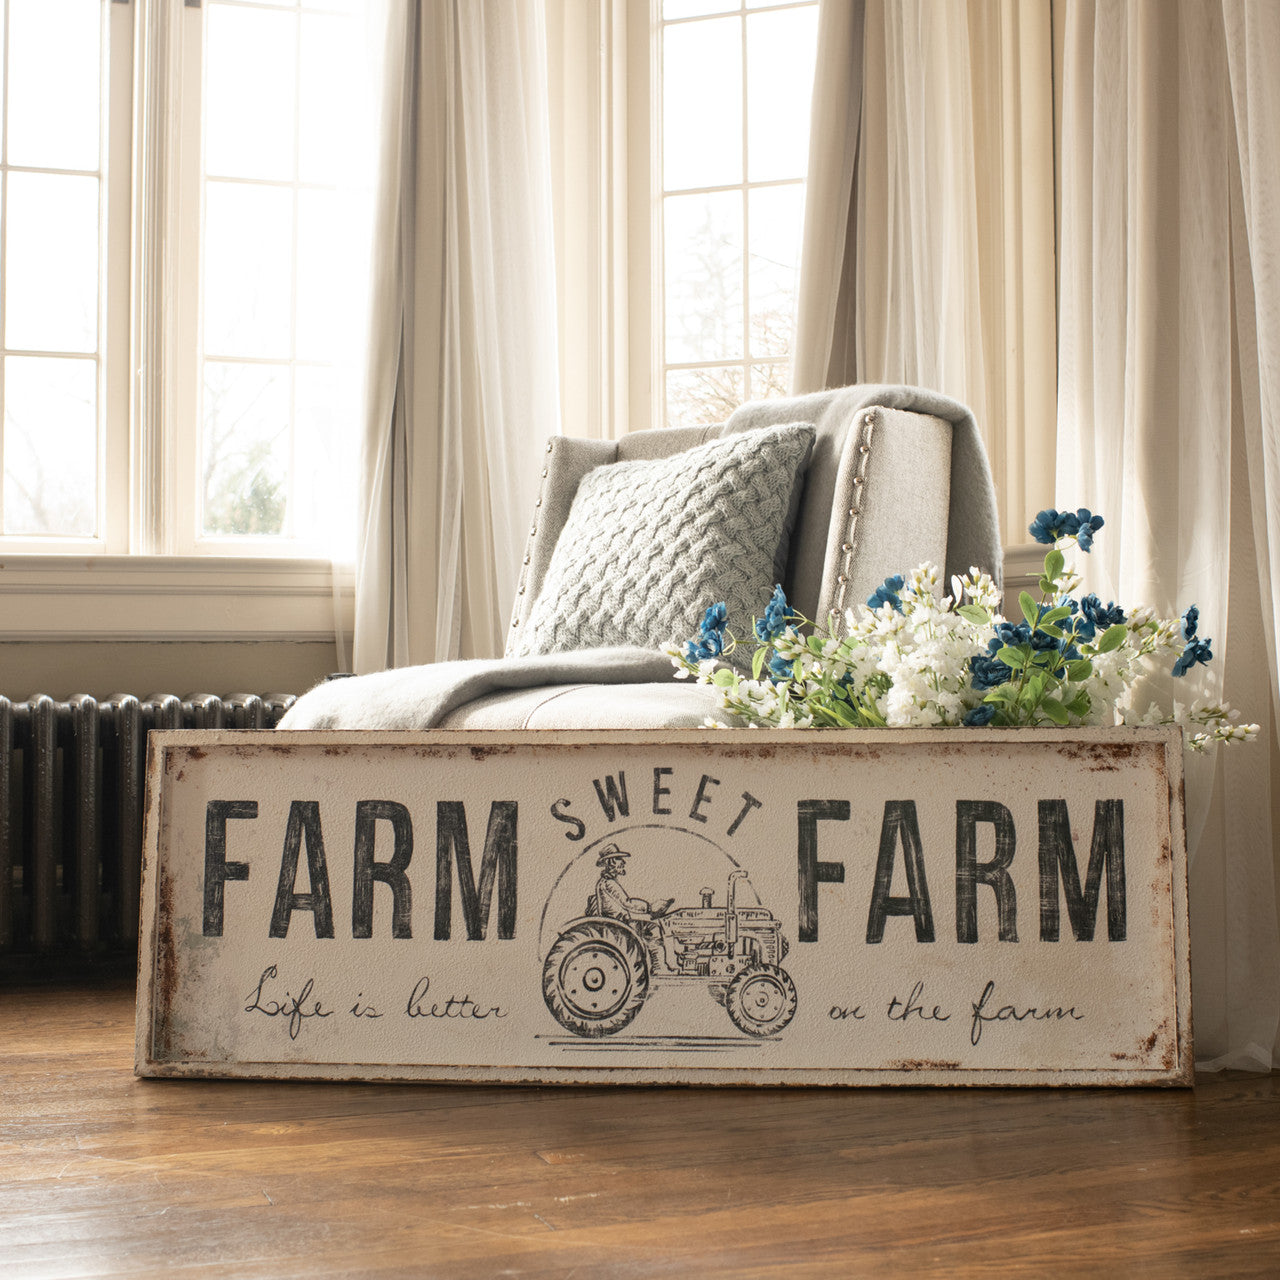 farm sweet farm sign Feathered Farmhouse